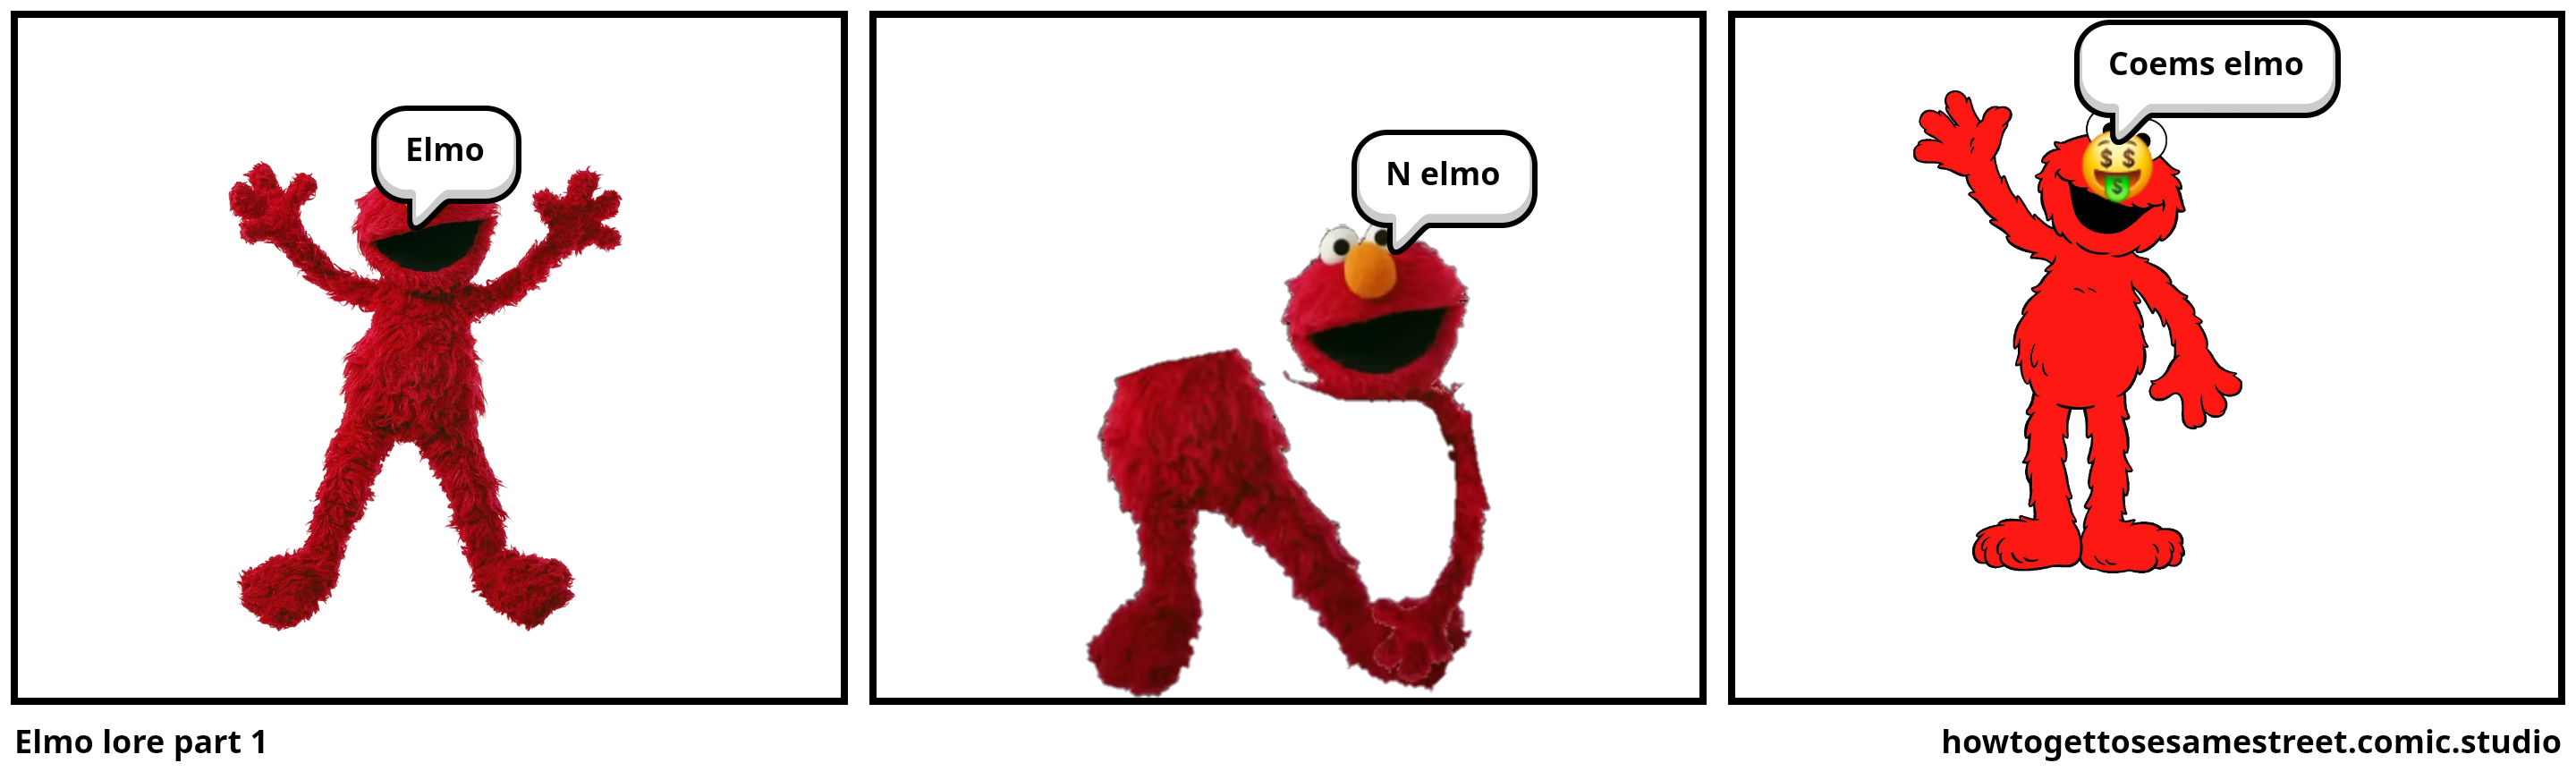 Elmo lore part 1